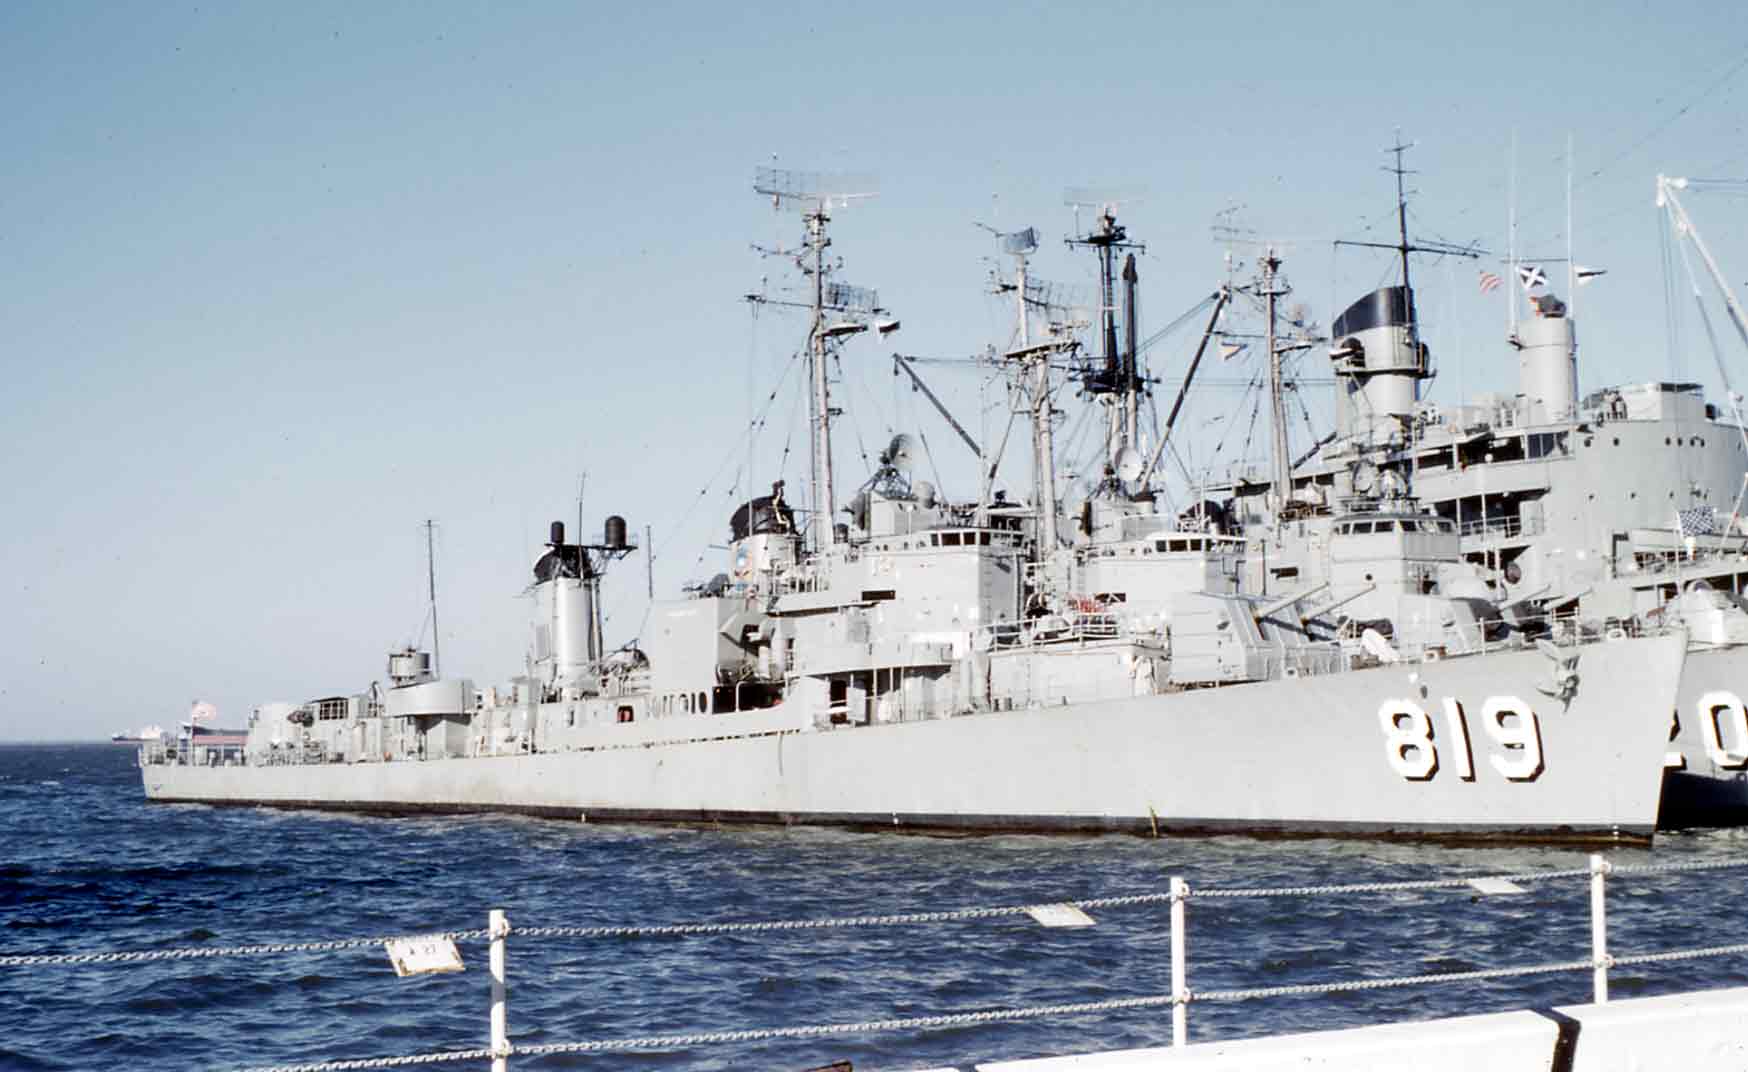 USS Holder (DDE-819) - Norfolk - 7 January 1962 - Donald R. Beal .jpg